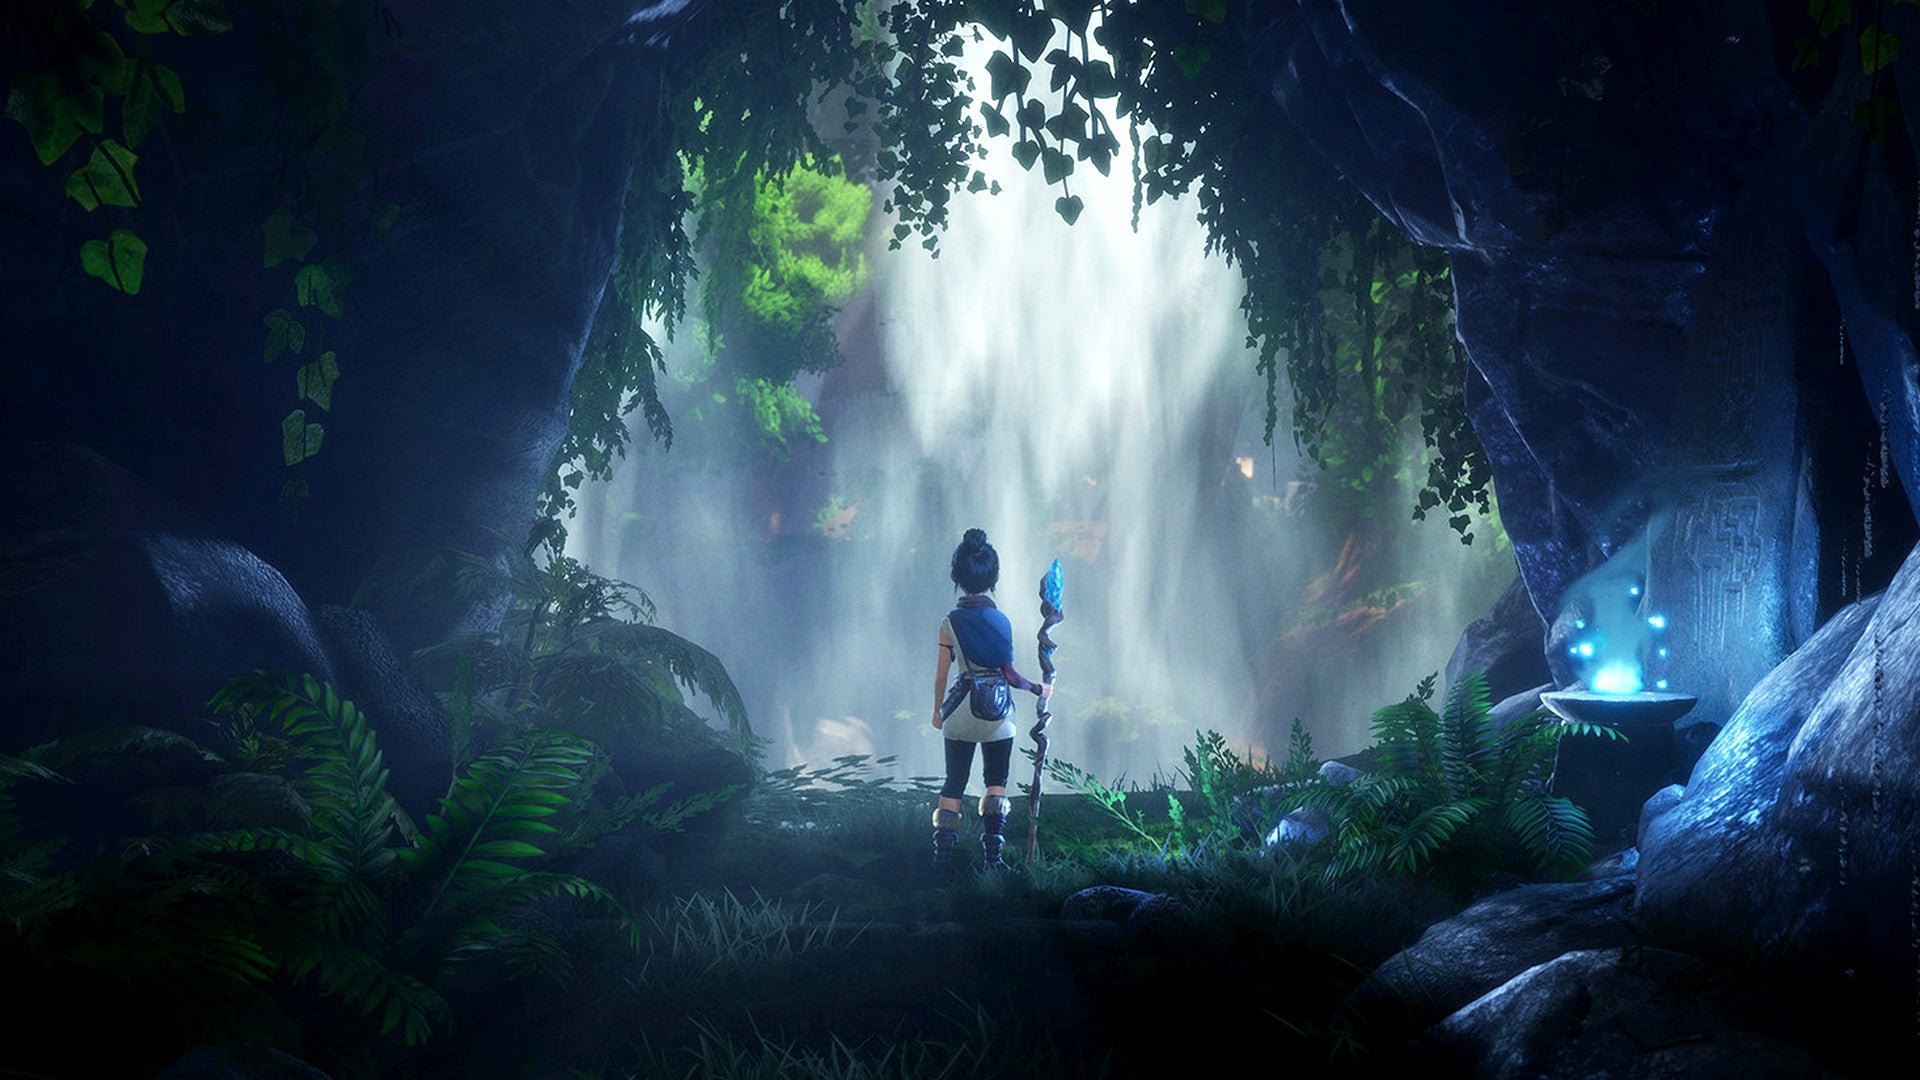 Bilder zu Kena: Bridge of Spirits: Jubiläums-Update bringt New Game+, Steam-Version angekündigt